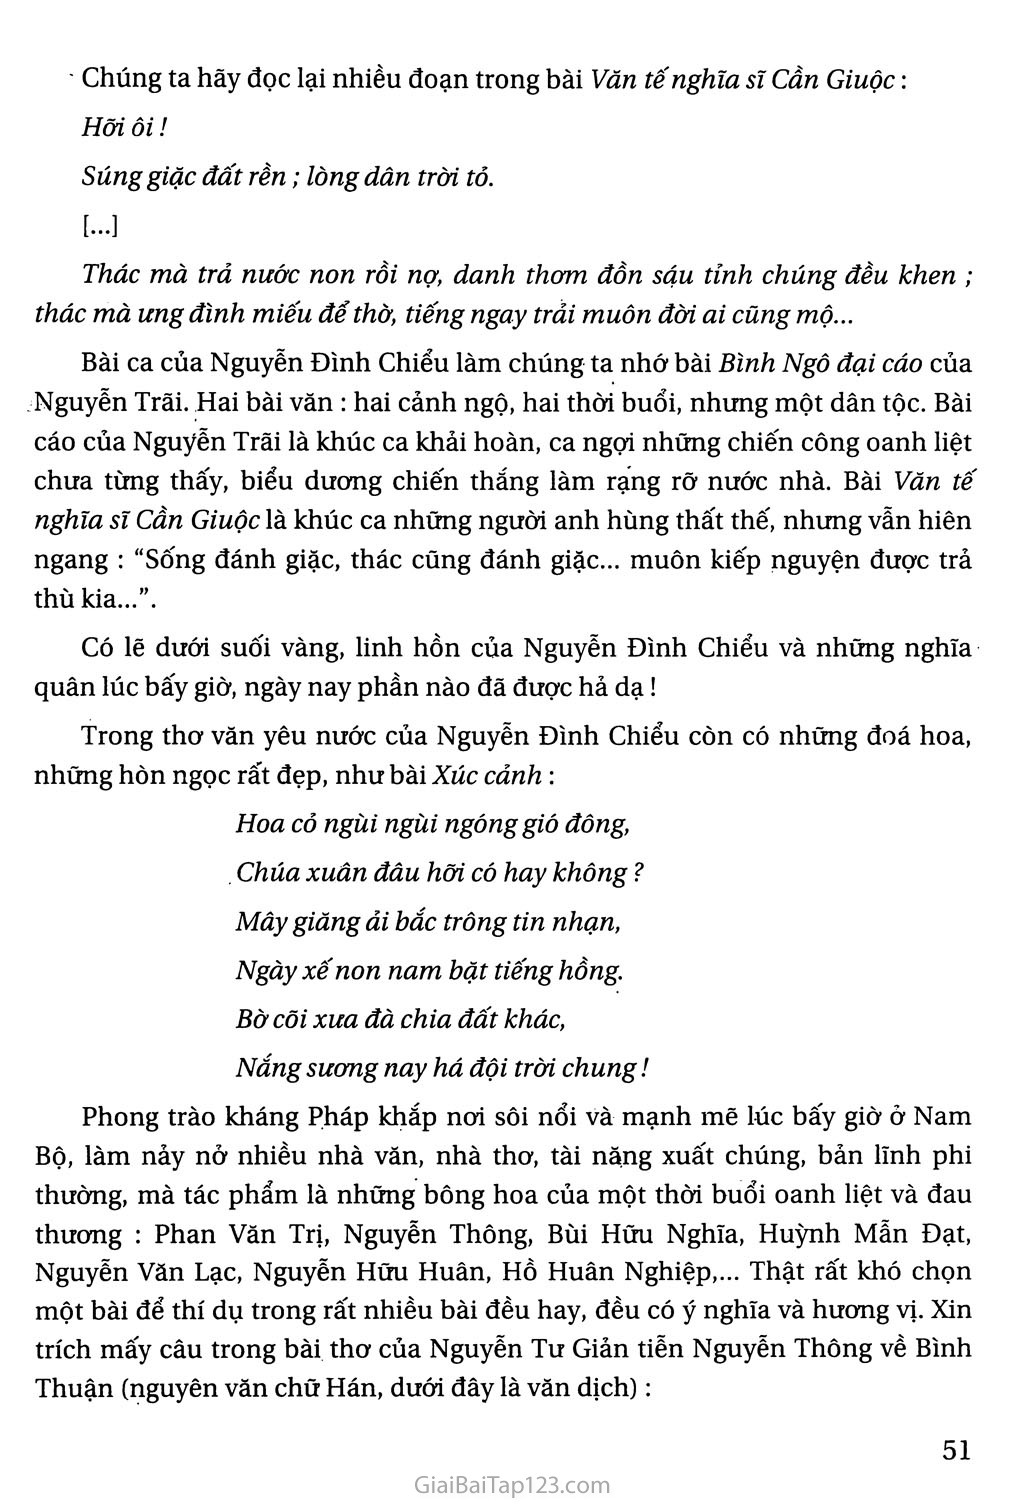 Nguyễn Đình Chiểu, ngôi sao sáng trong văn nghệ của dân tộc trang 5